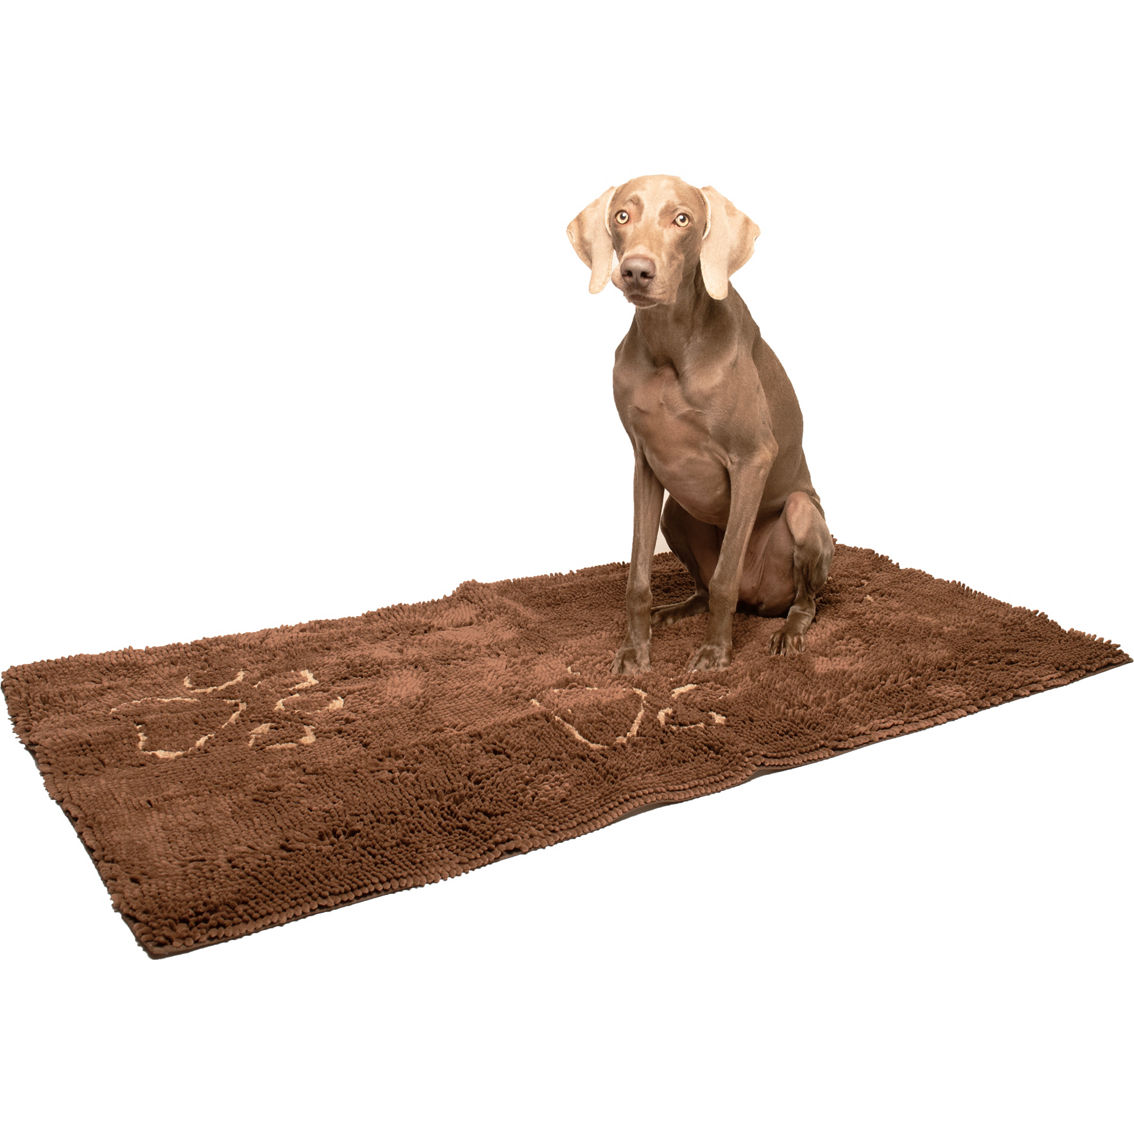 Dog Gone Smart Dirty Dog Doormat Runner - Image 2 of 2